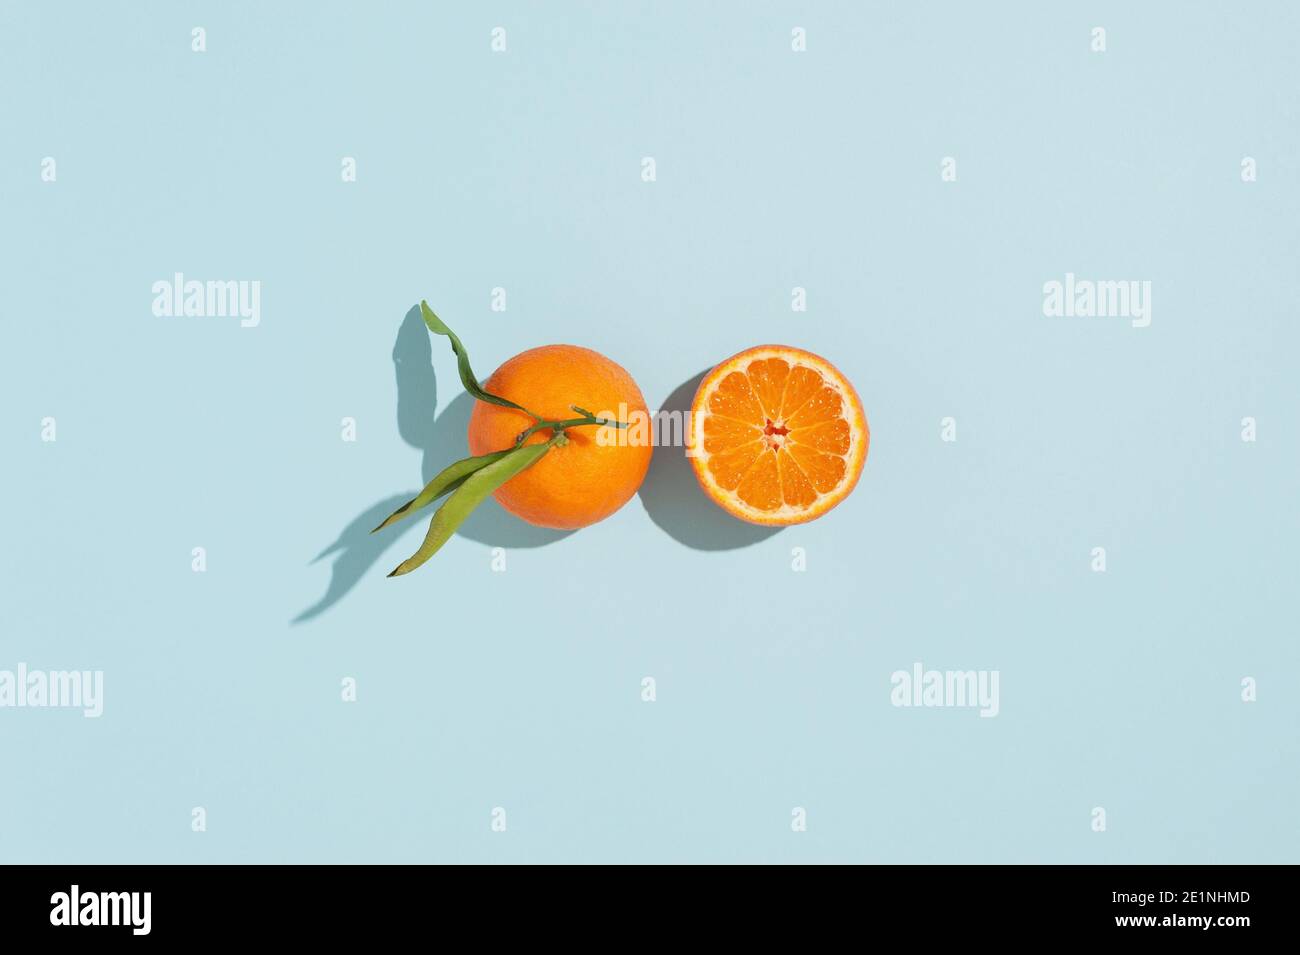 Kreativer Hintergrund mit frischen orangenen Mandarinen auf blauem Hintergrund. Bild mit harten Schatten. Abstrakter Sommer- oder Winterhintergrund. Stockfoto